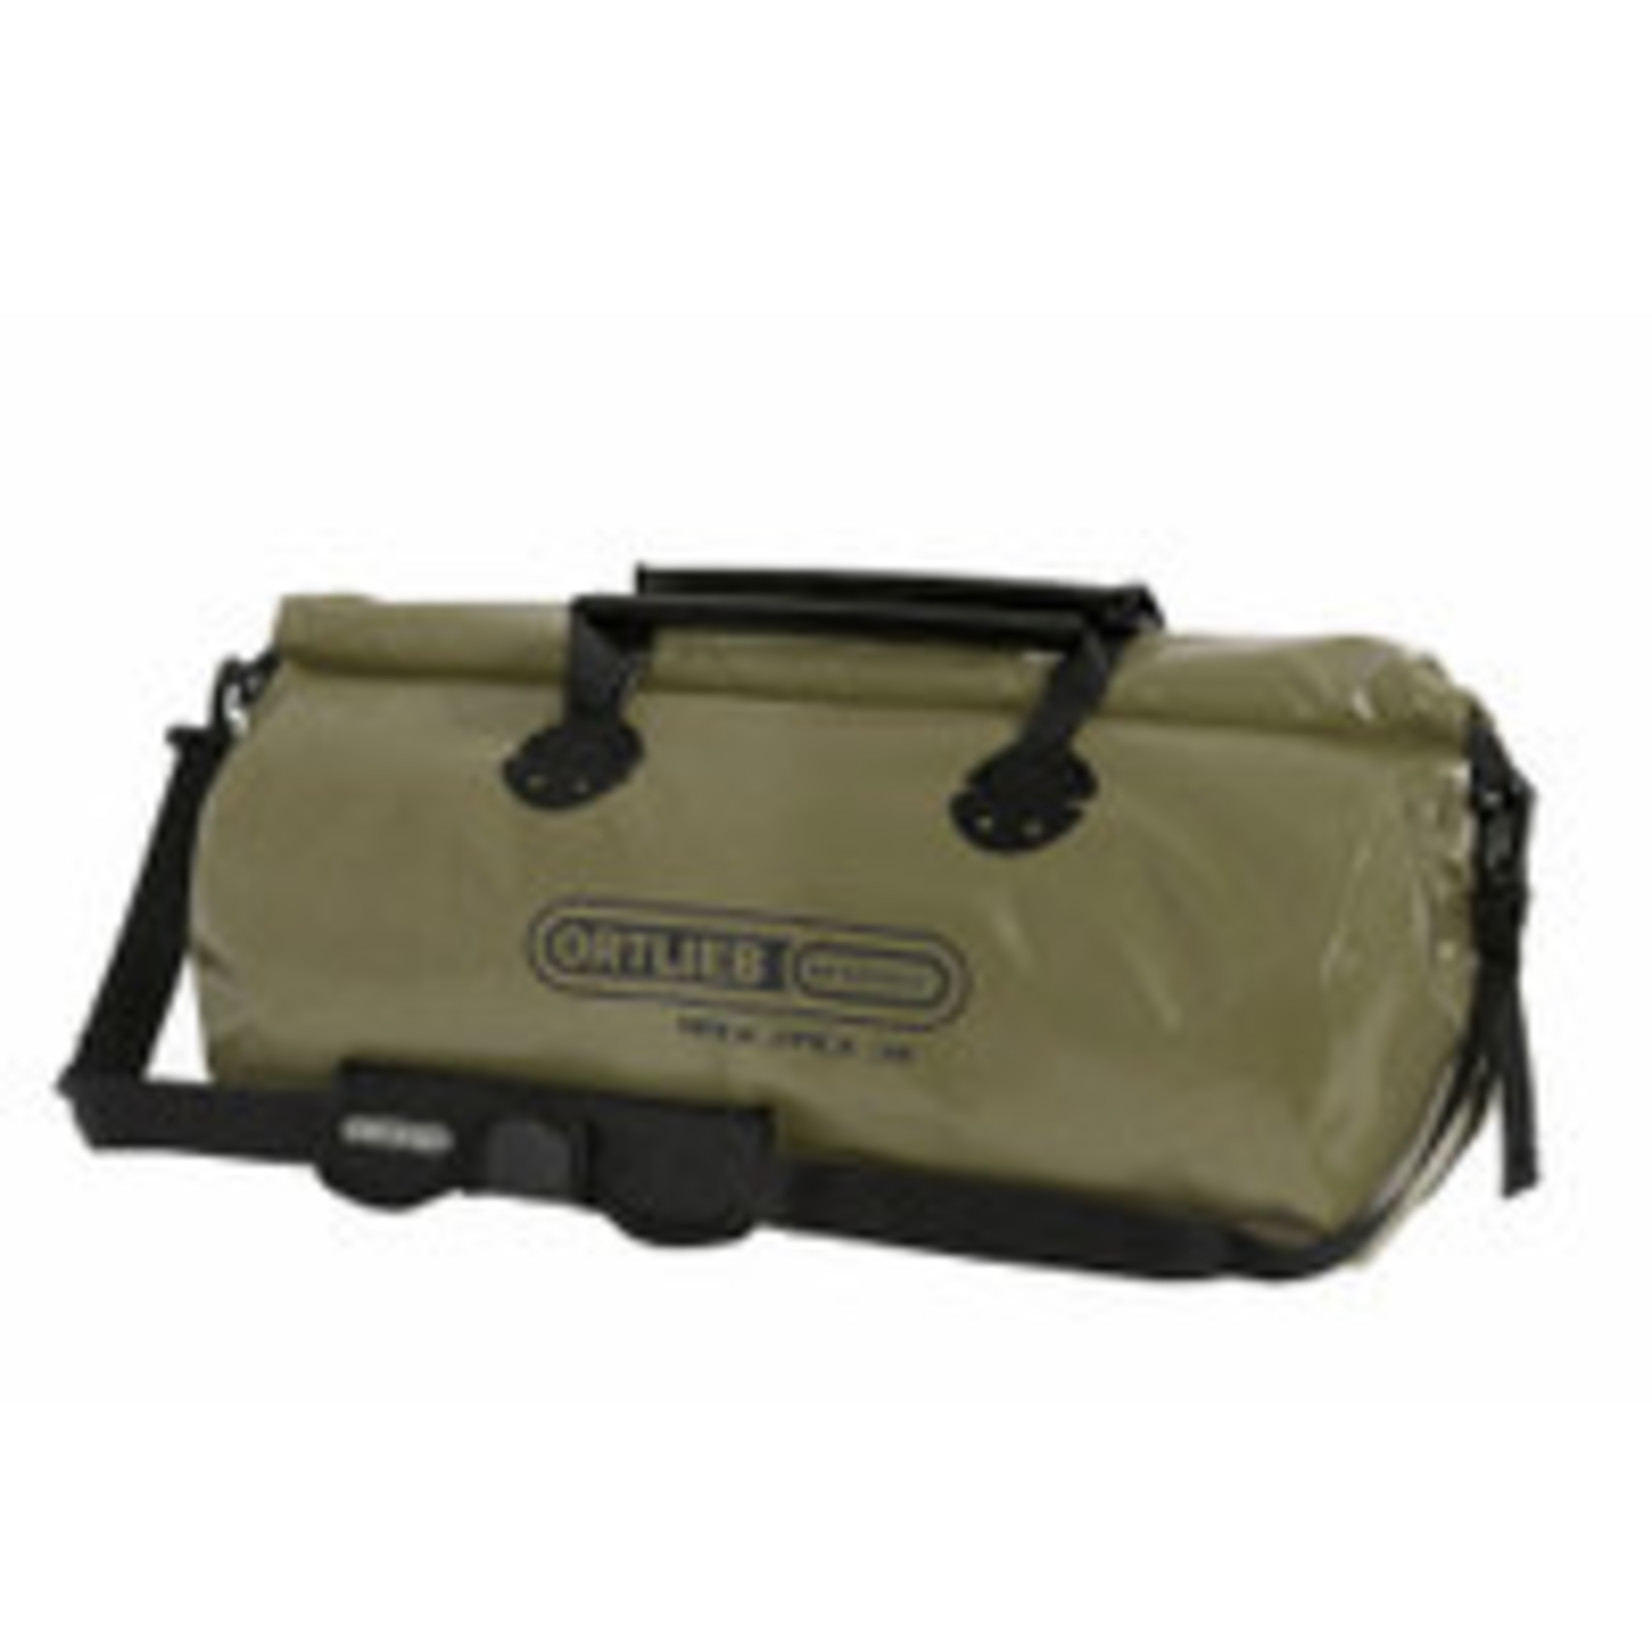 Ortlieb New Ortlieb Rack-Pack 100% Waterproof Travel Bag K63H6 - Large - 49L Olive